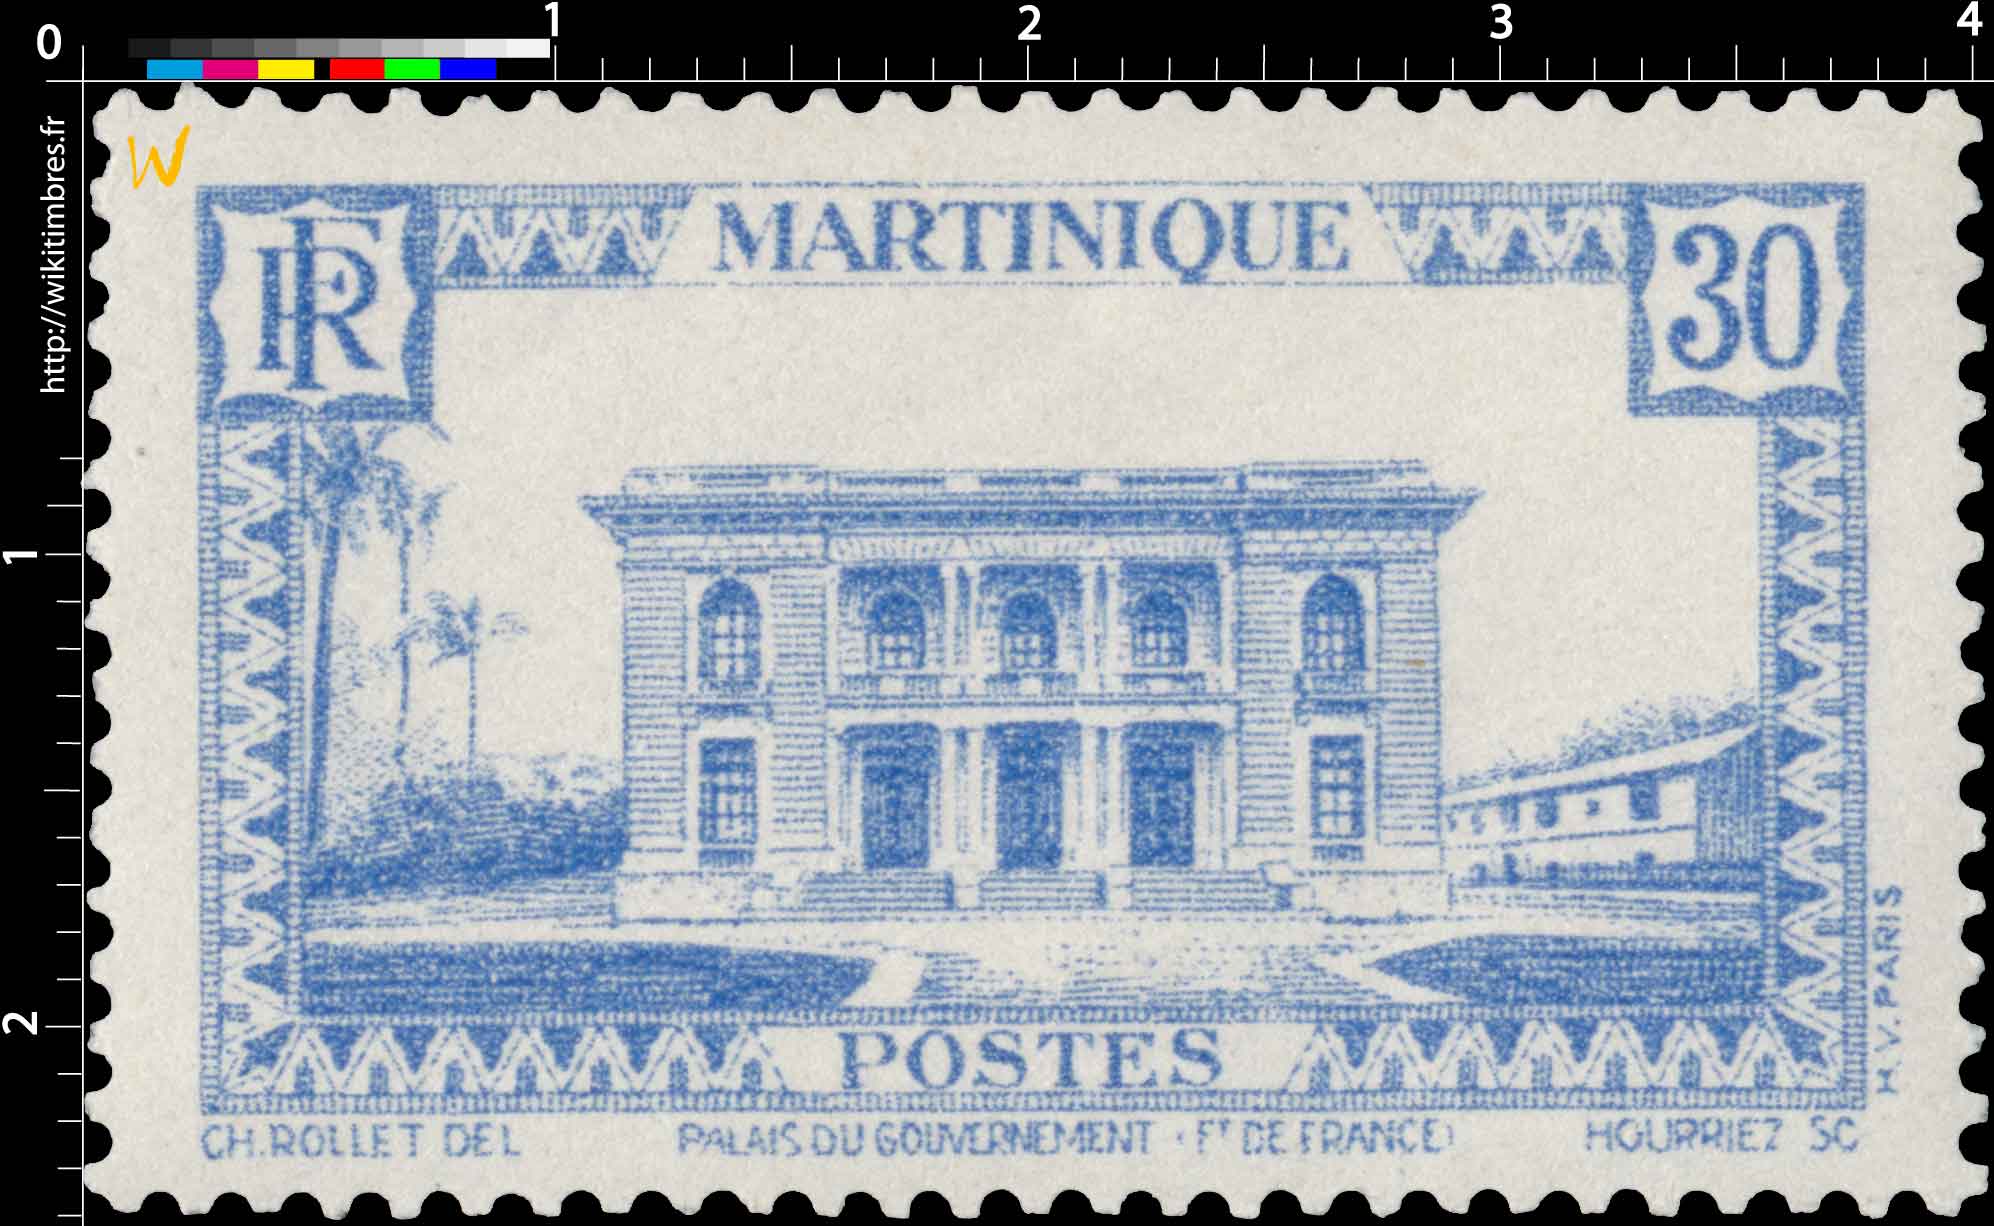 Martinique - Palais du gouvernement  Fort-de-France